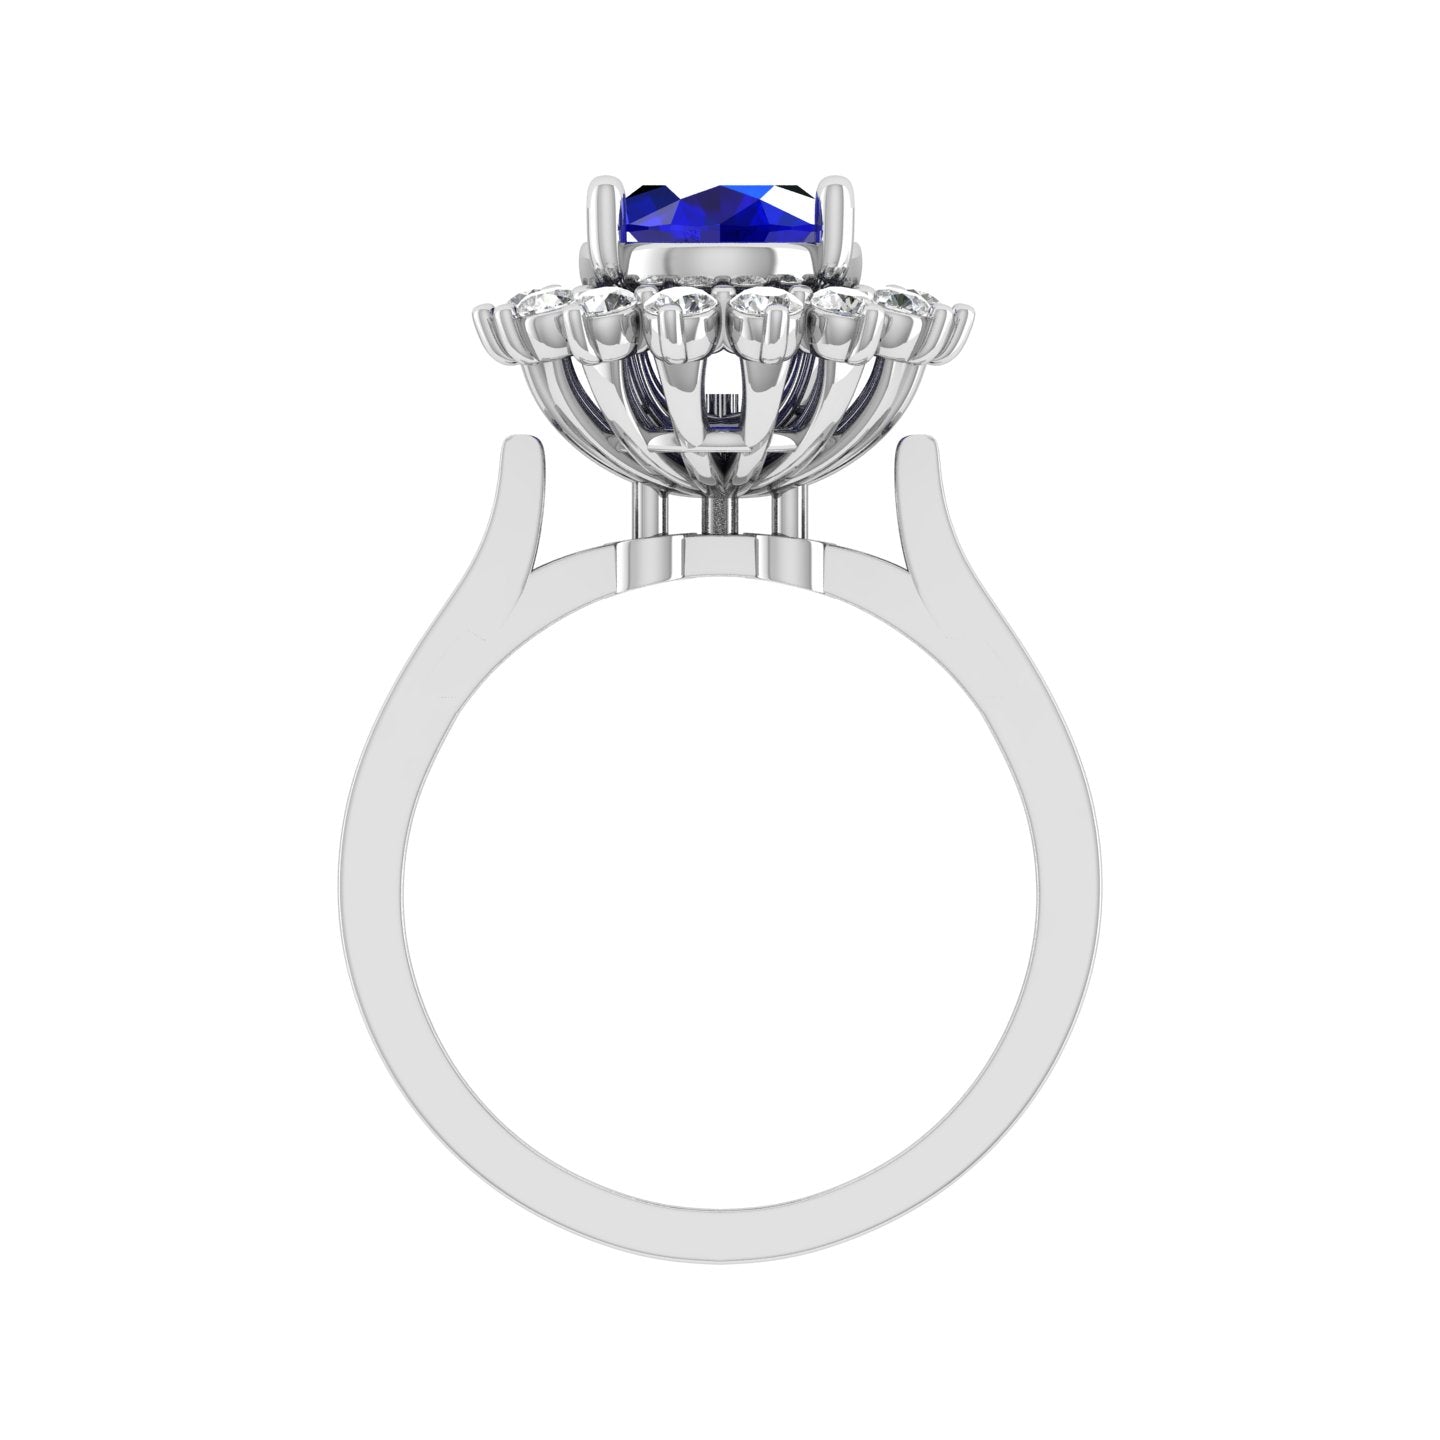 Royal Luxury 18K White Gold Diamond Ring  -  JN030609-R105